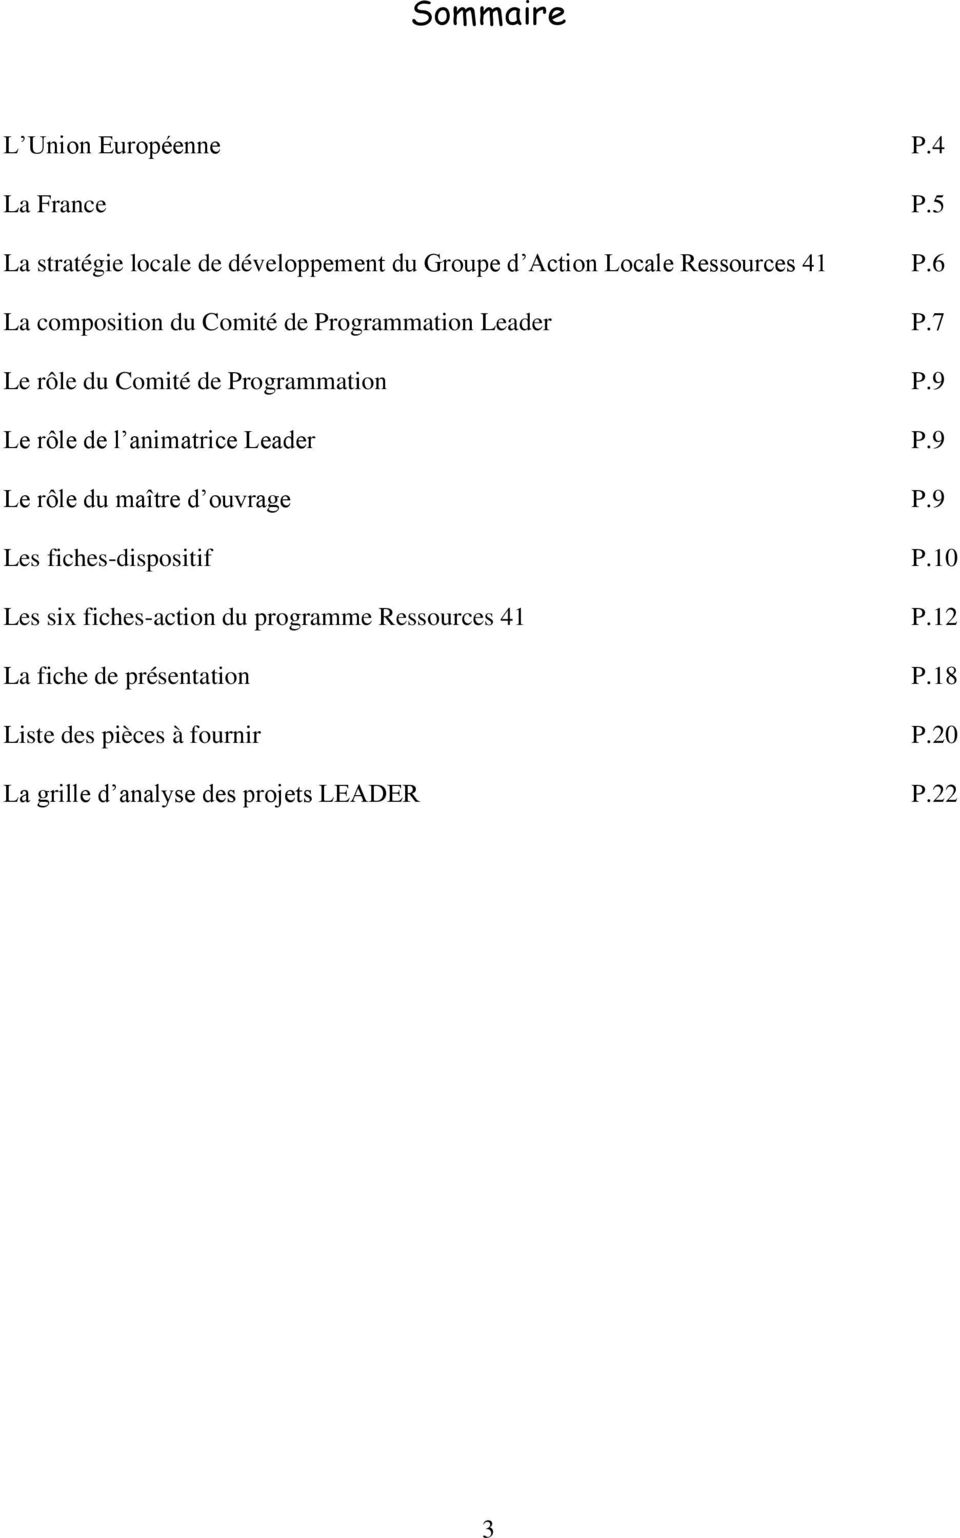 6 La composition du Comité de Programmation Leader P.7 Le rôle du Comité de Programmation P.